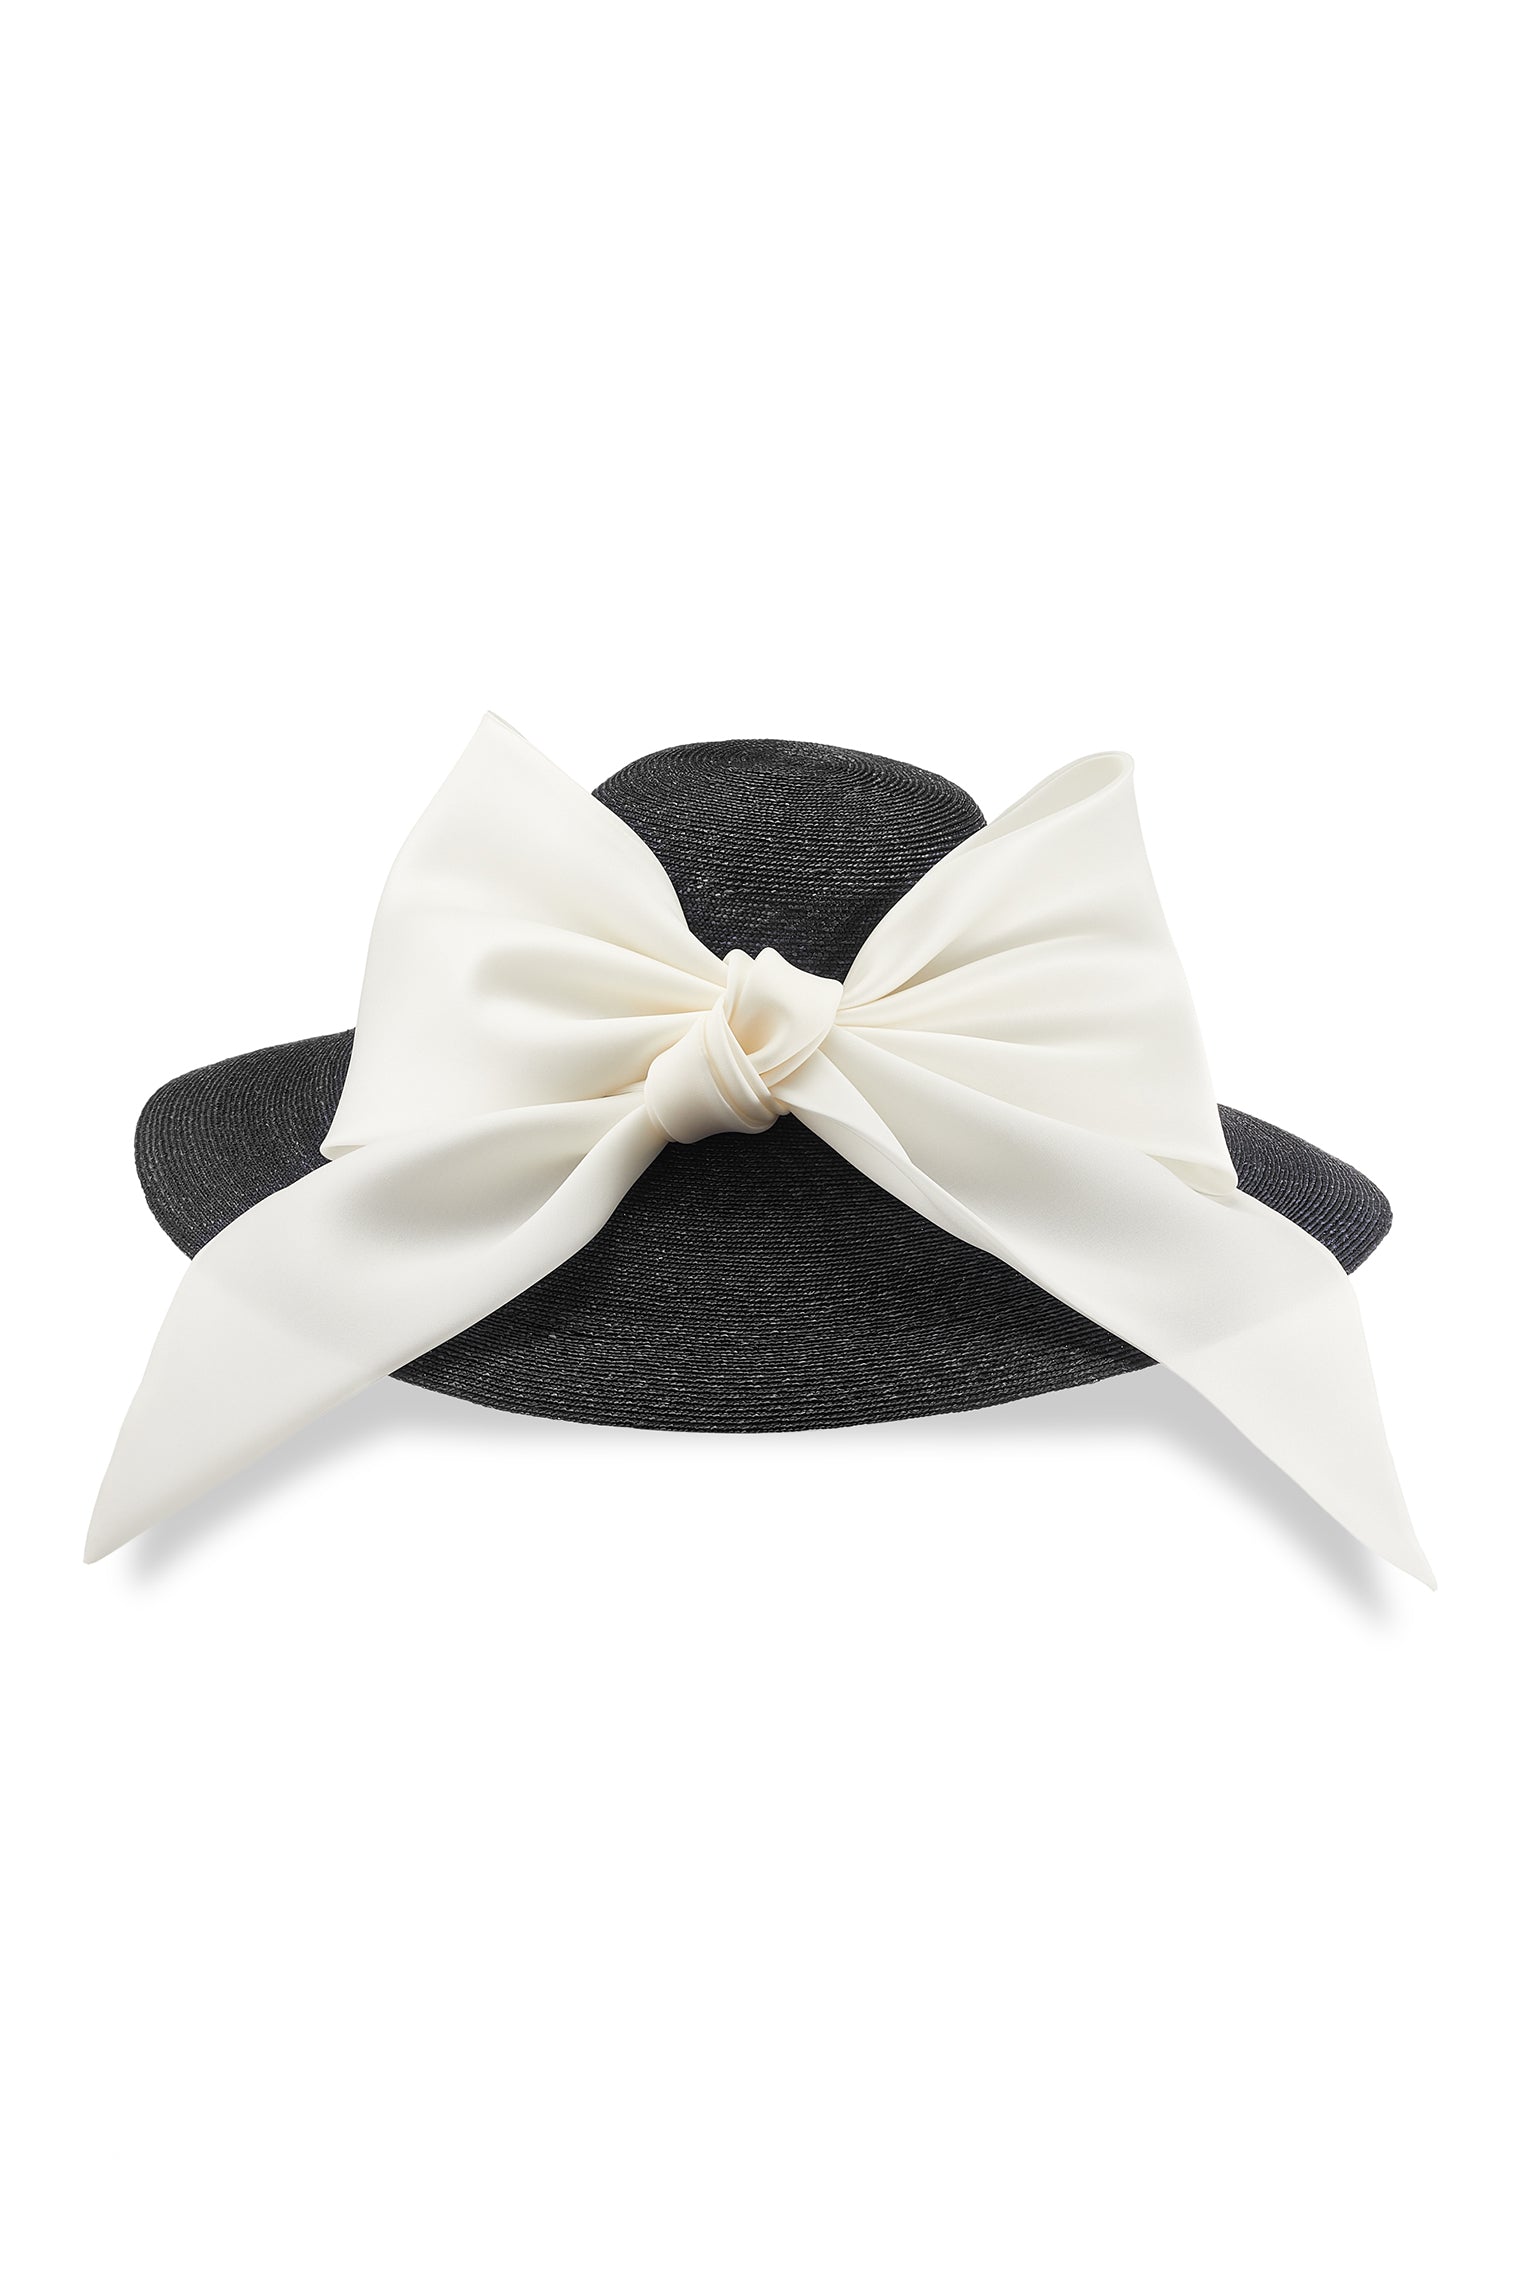 Darjeeling Black Wide Brim Hat - Royal Ascot Hats - Lock & Co. Hatters London UK